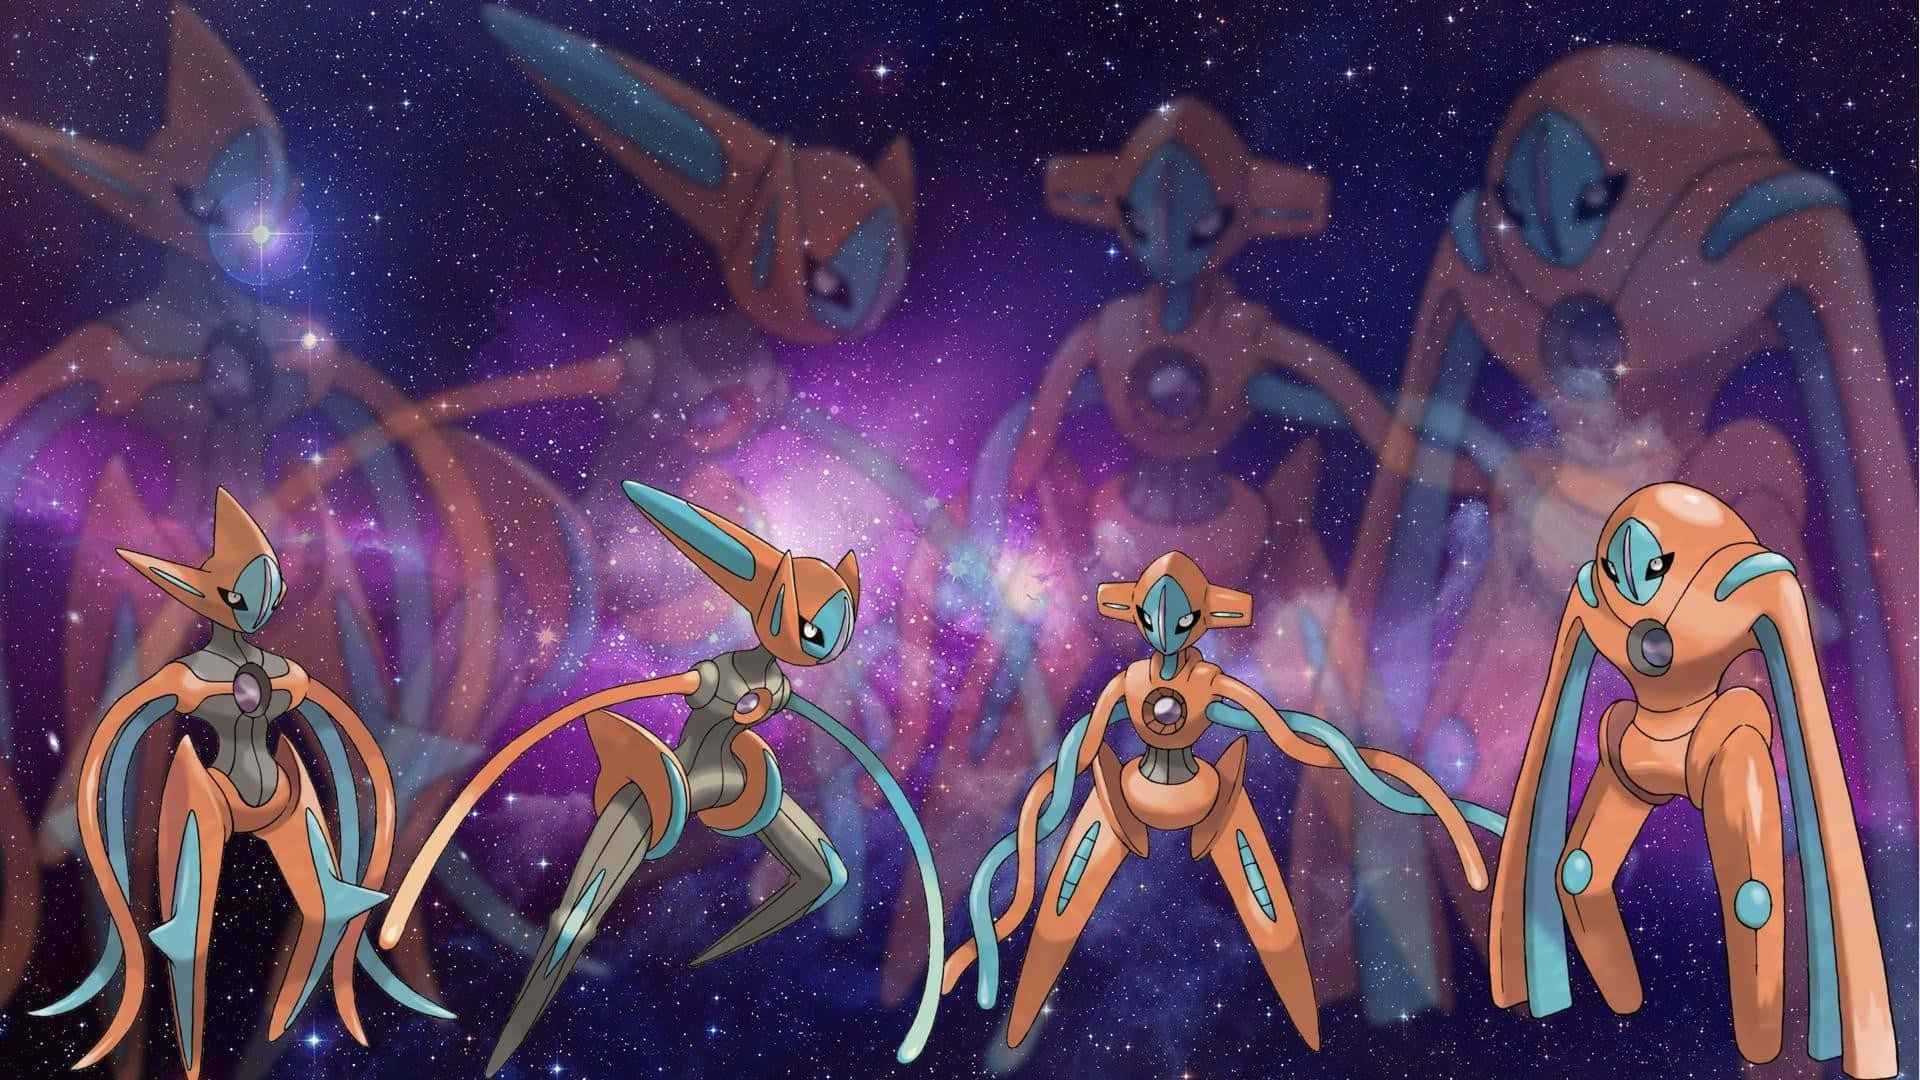 Imagemdo Lendário Pokémon Deoxys.